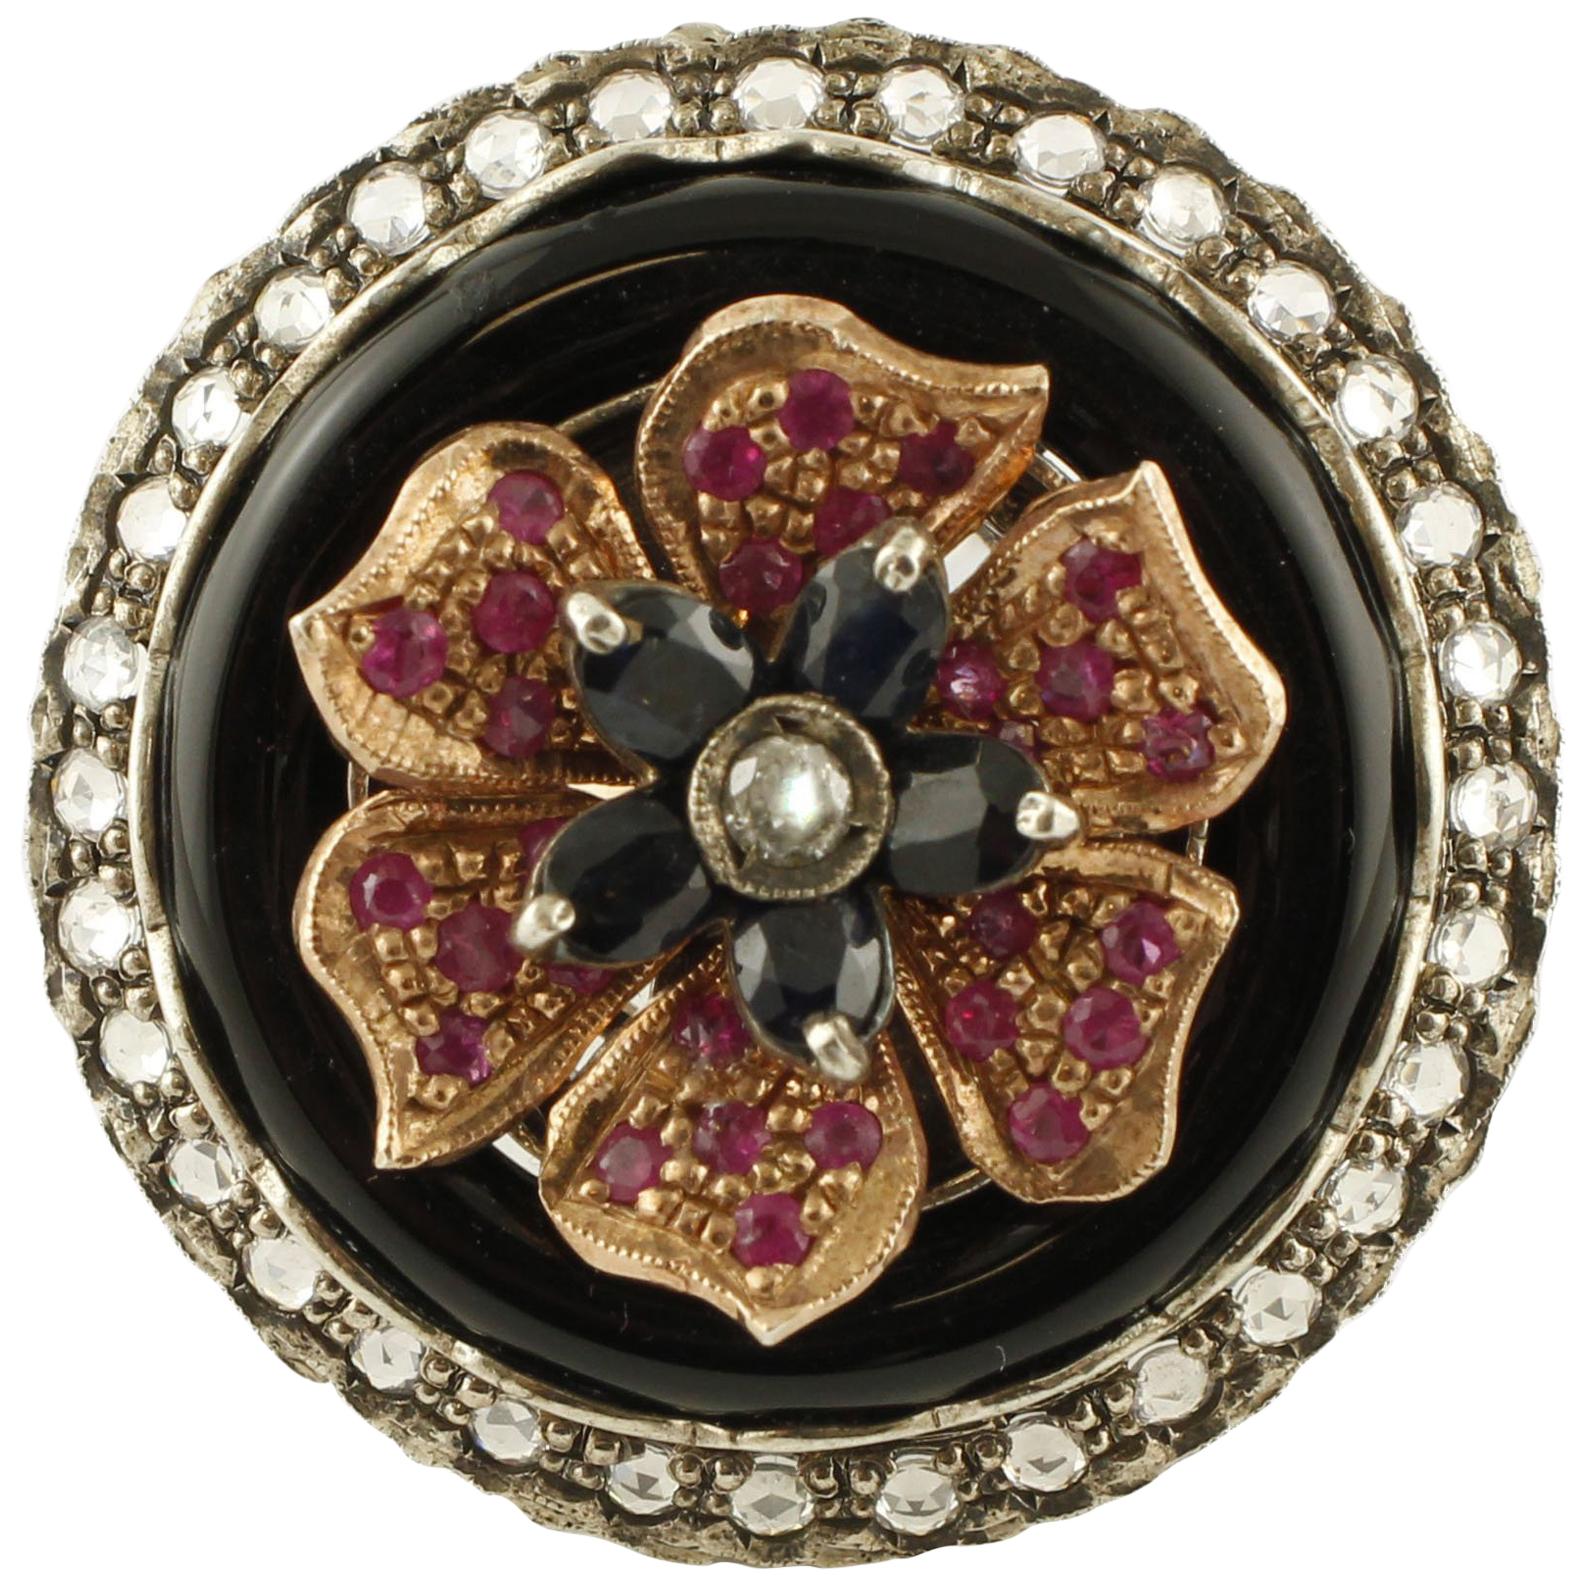 Blumenring aus Roségold und Silber mit Diamanten, Rubinen, australischem blauem Saphir, Onyx und Silber